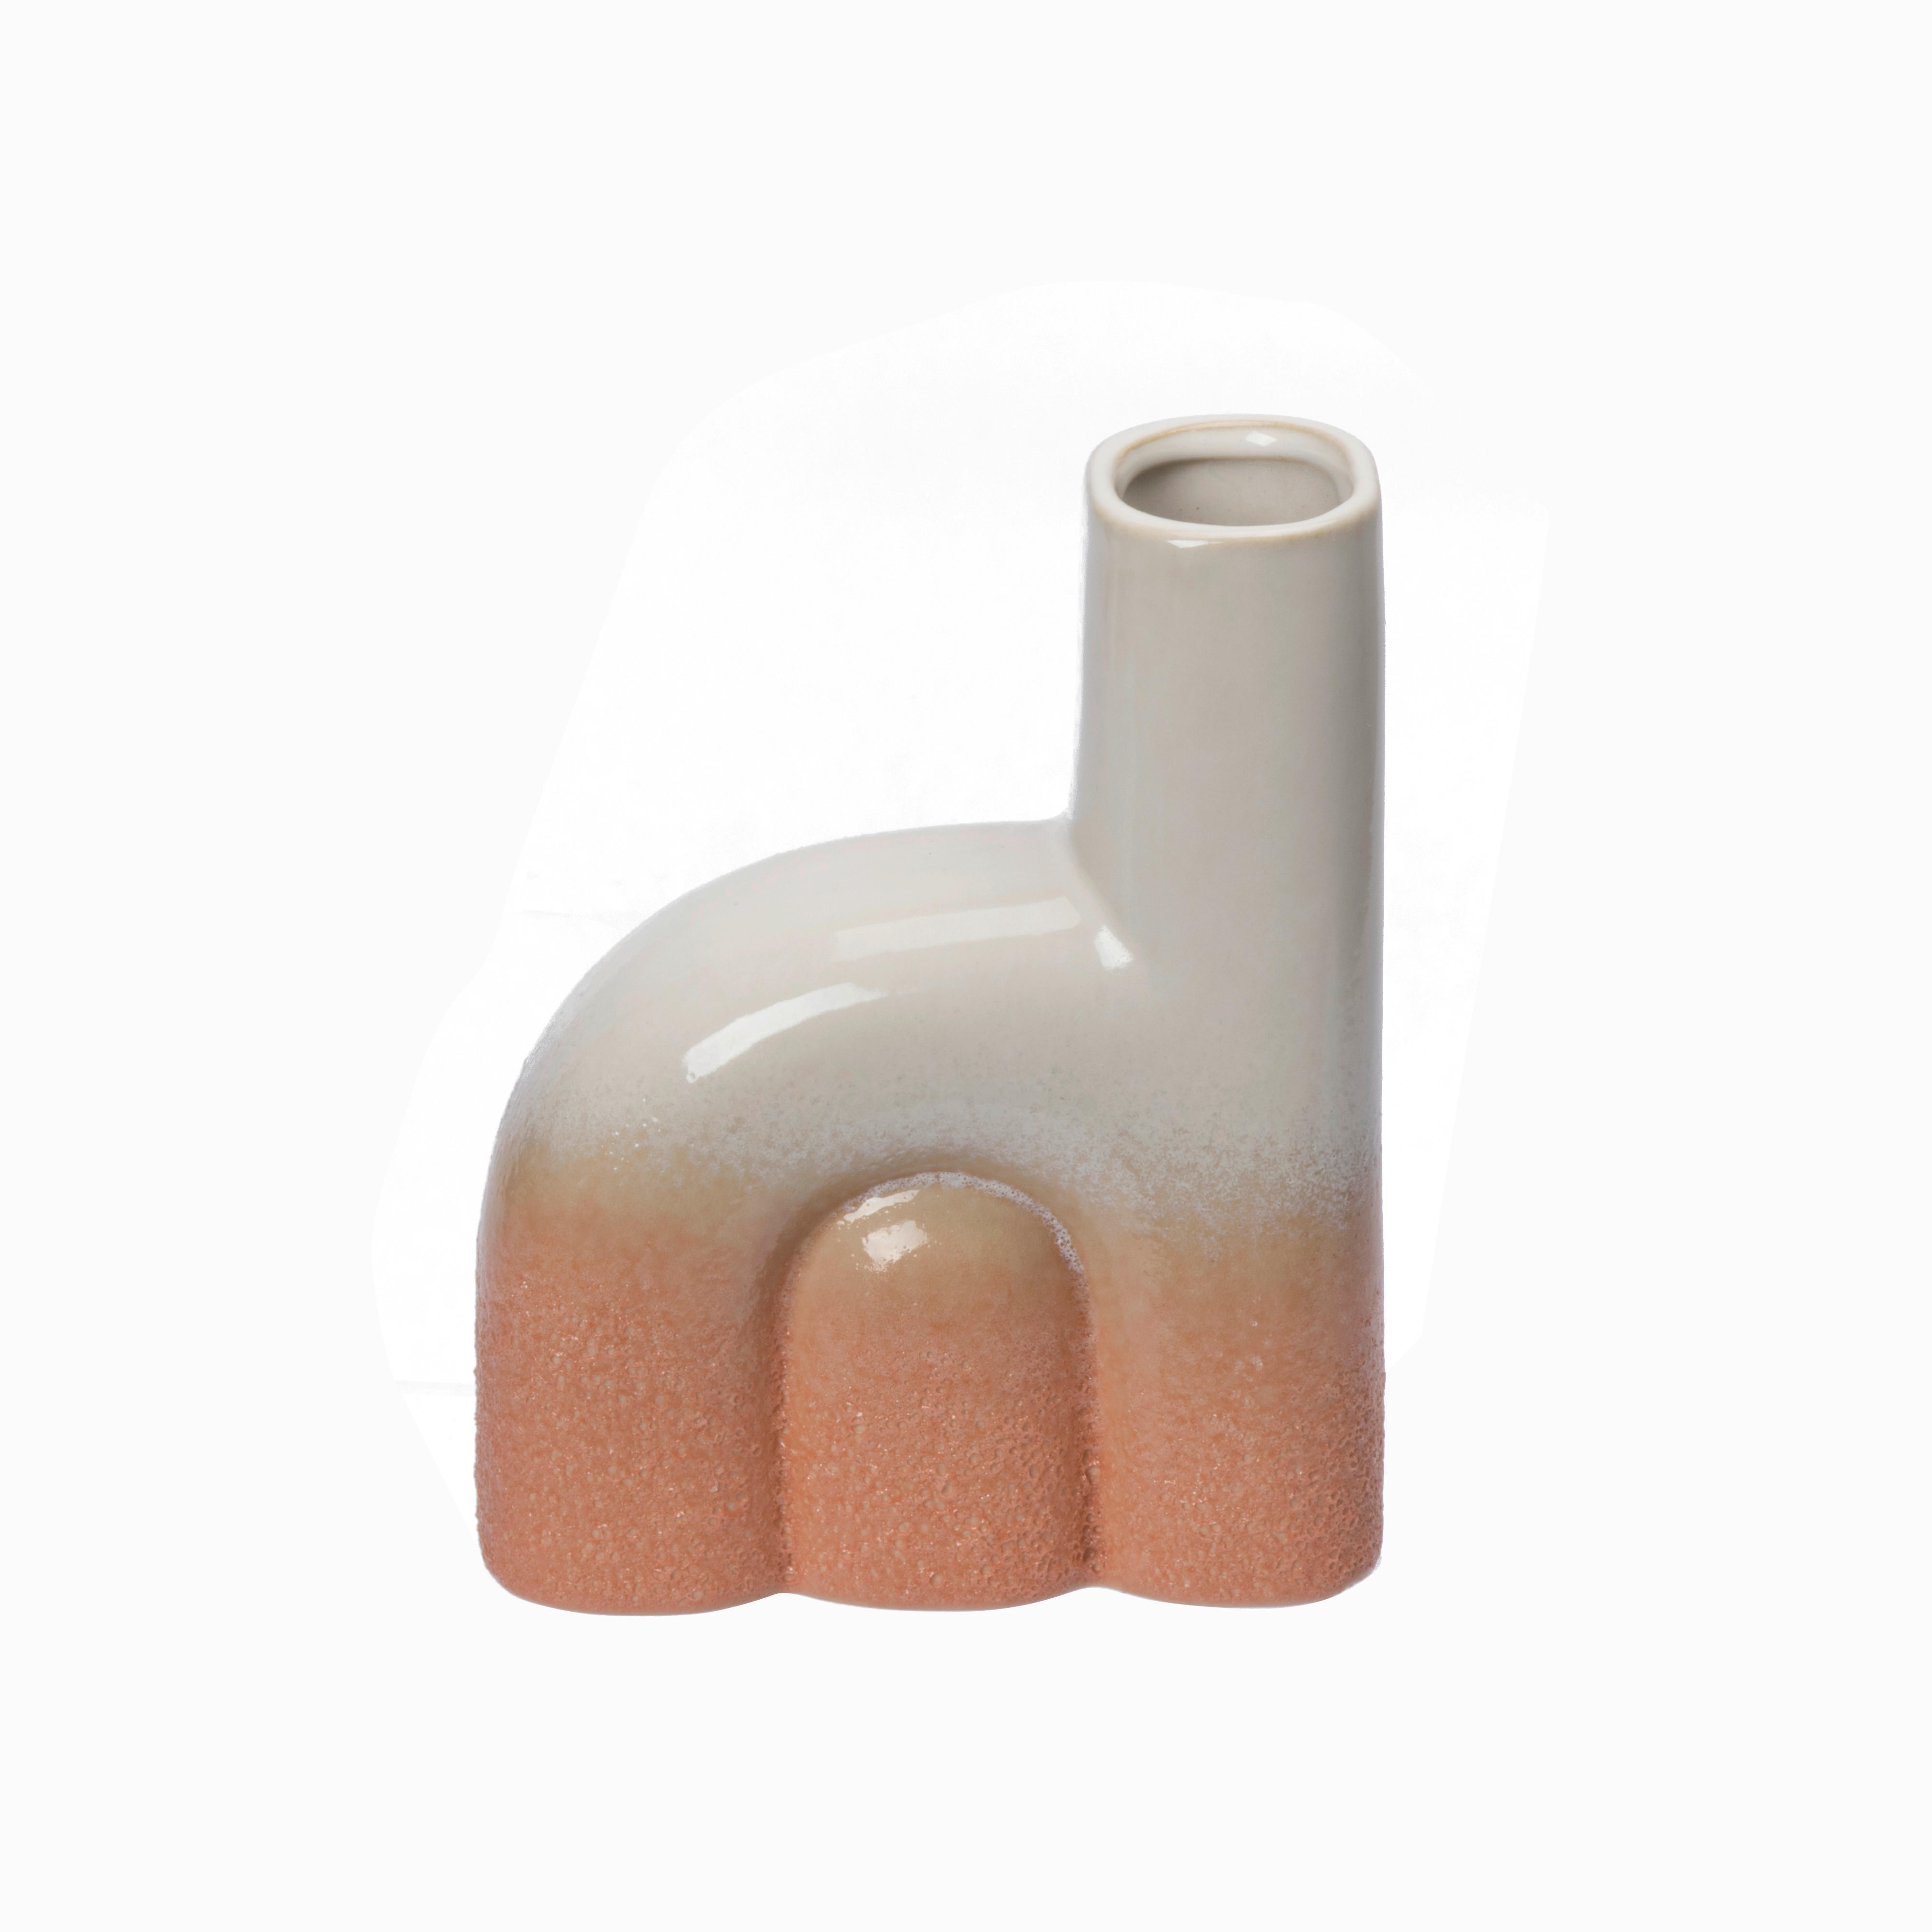 VASE 15.5 cm  - Terracotta/Weiß, Design, Keramik (12,4/15,5/5,2cm) - Ambia Home